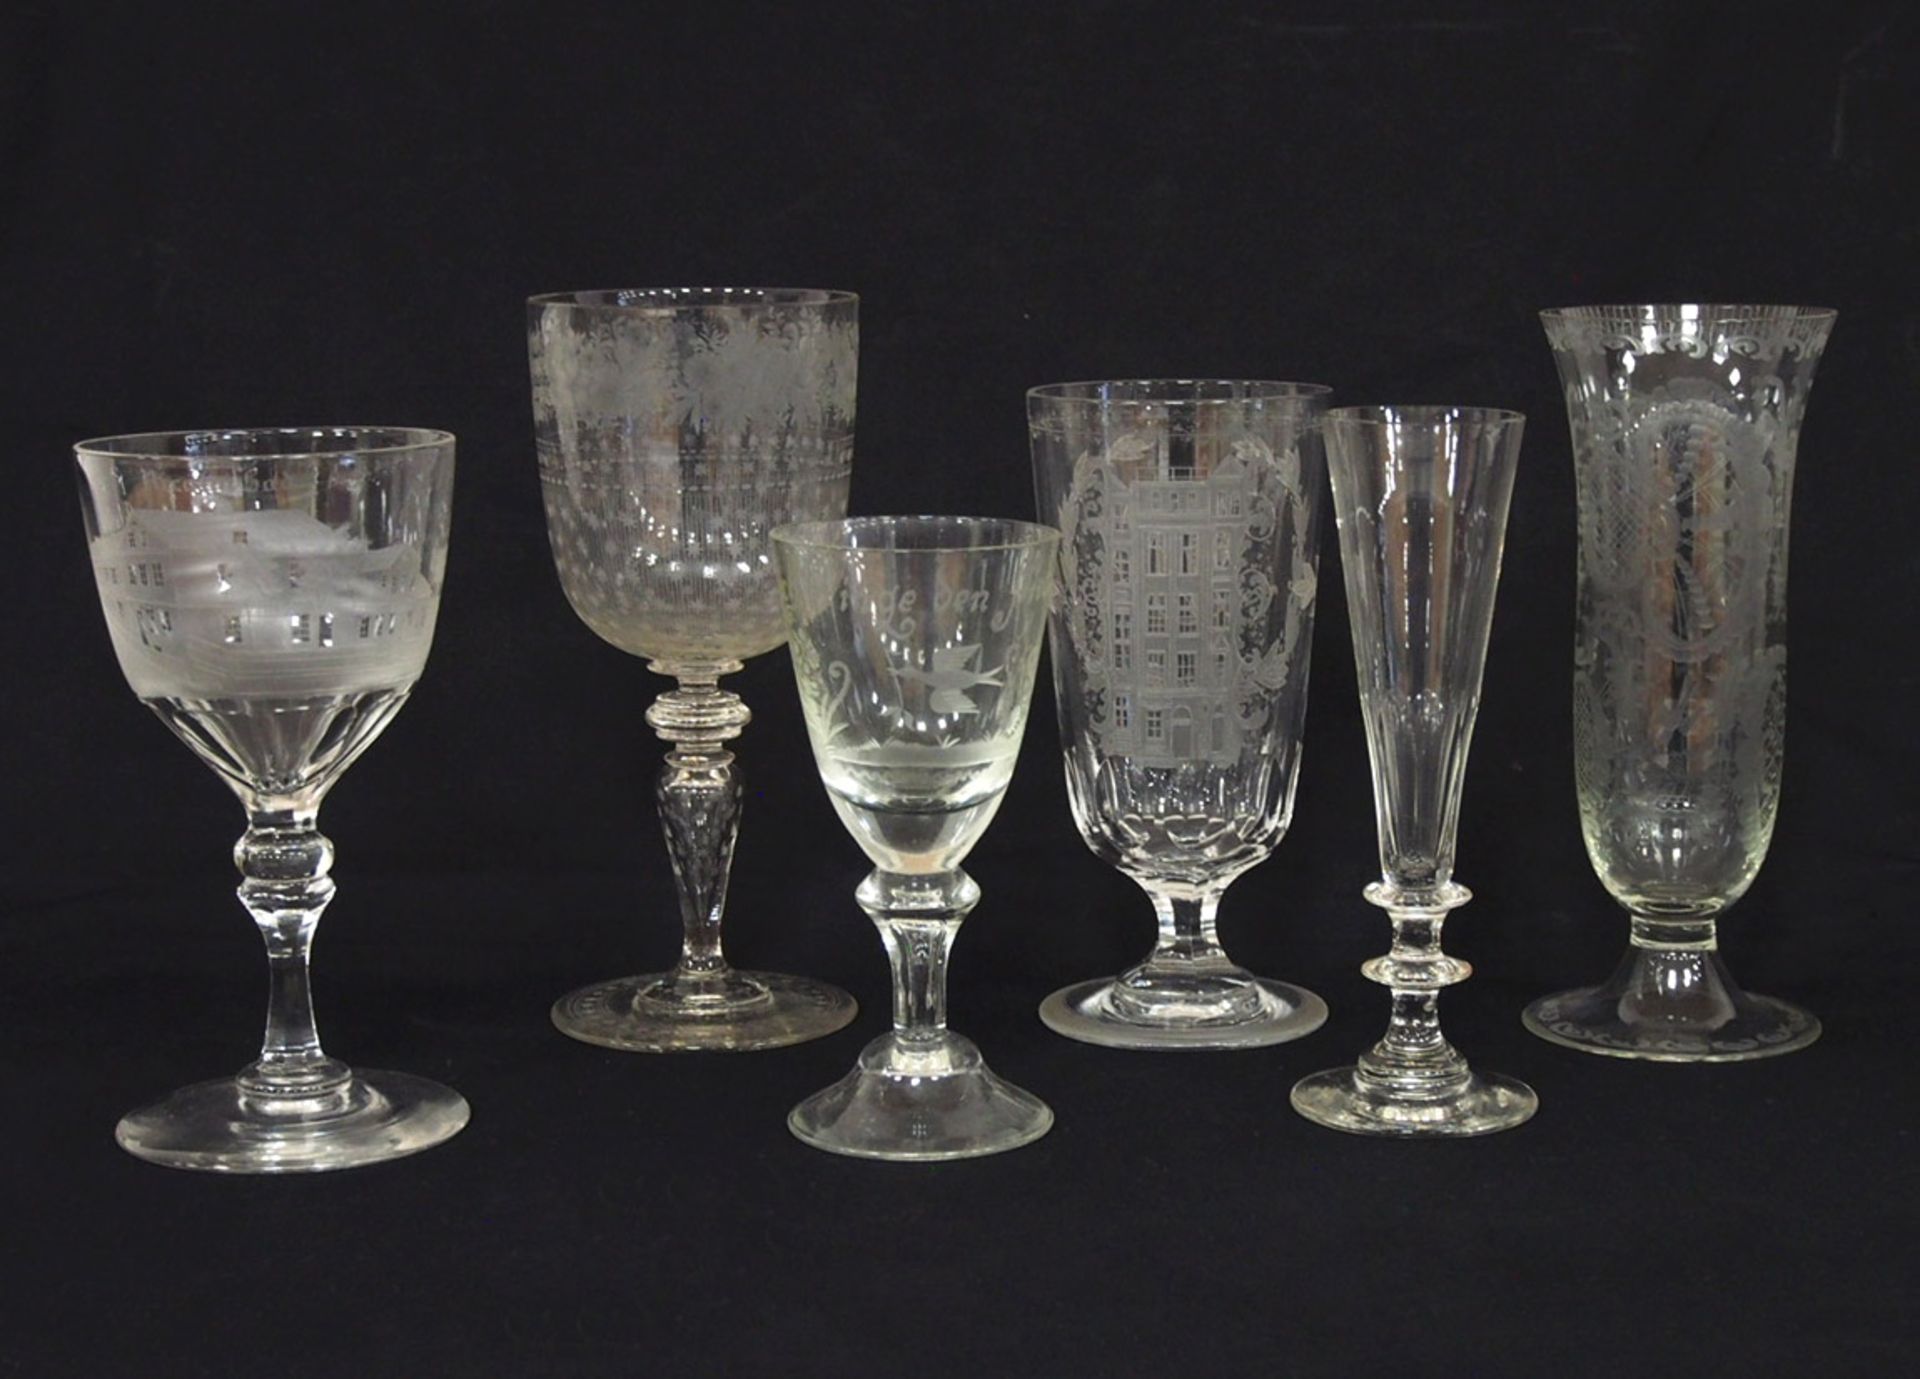 Sechs verschiedene GläserGlas, graviert und geätztes Dekor, 18. / 19. Jahrhundert, Höhe bis zu 21